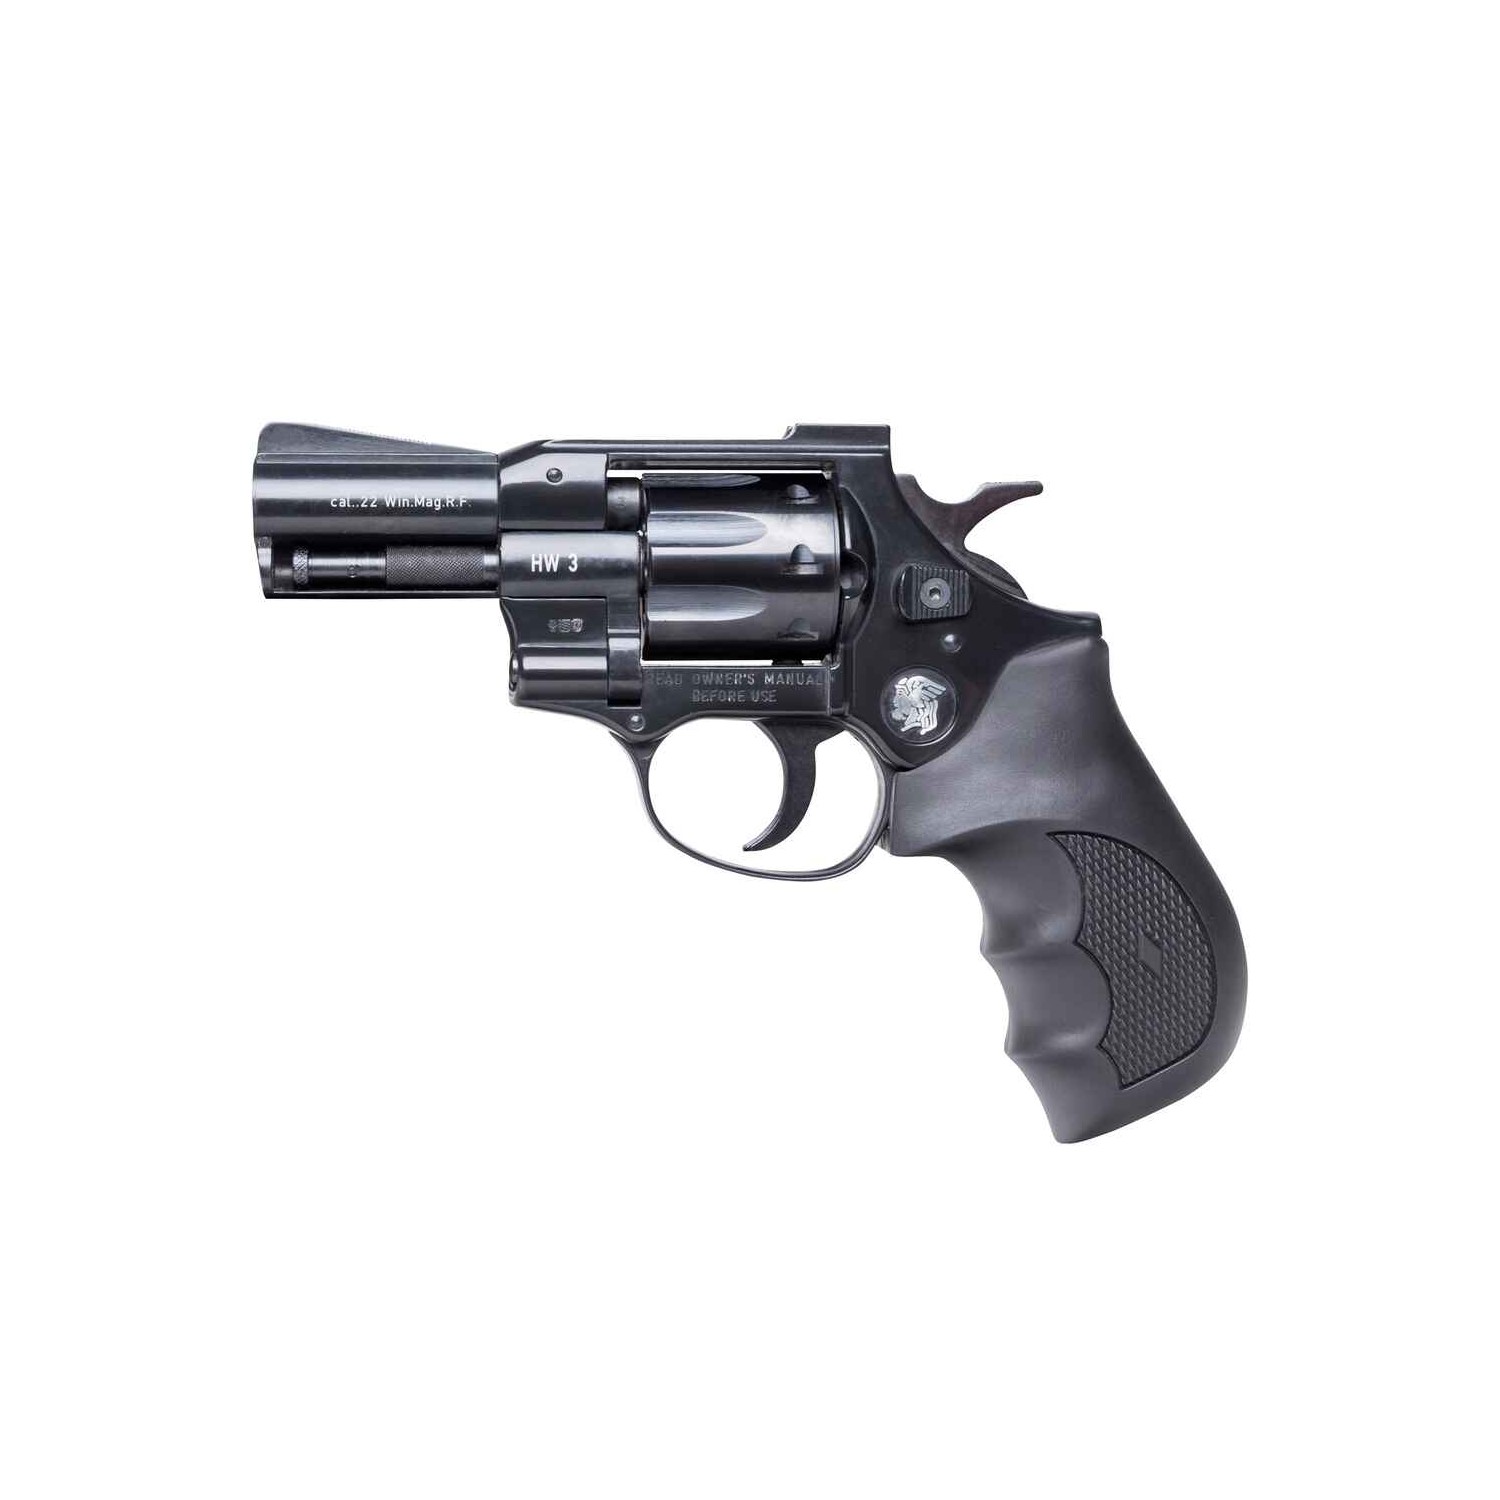 Weihrauch HW-3 Revolver, Kal. .22. l.r., 2 3/4''